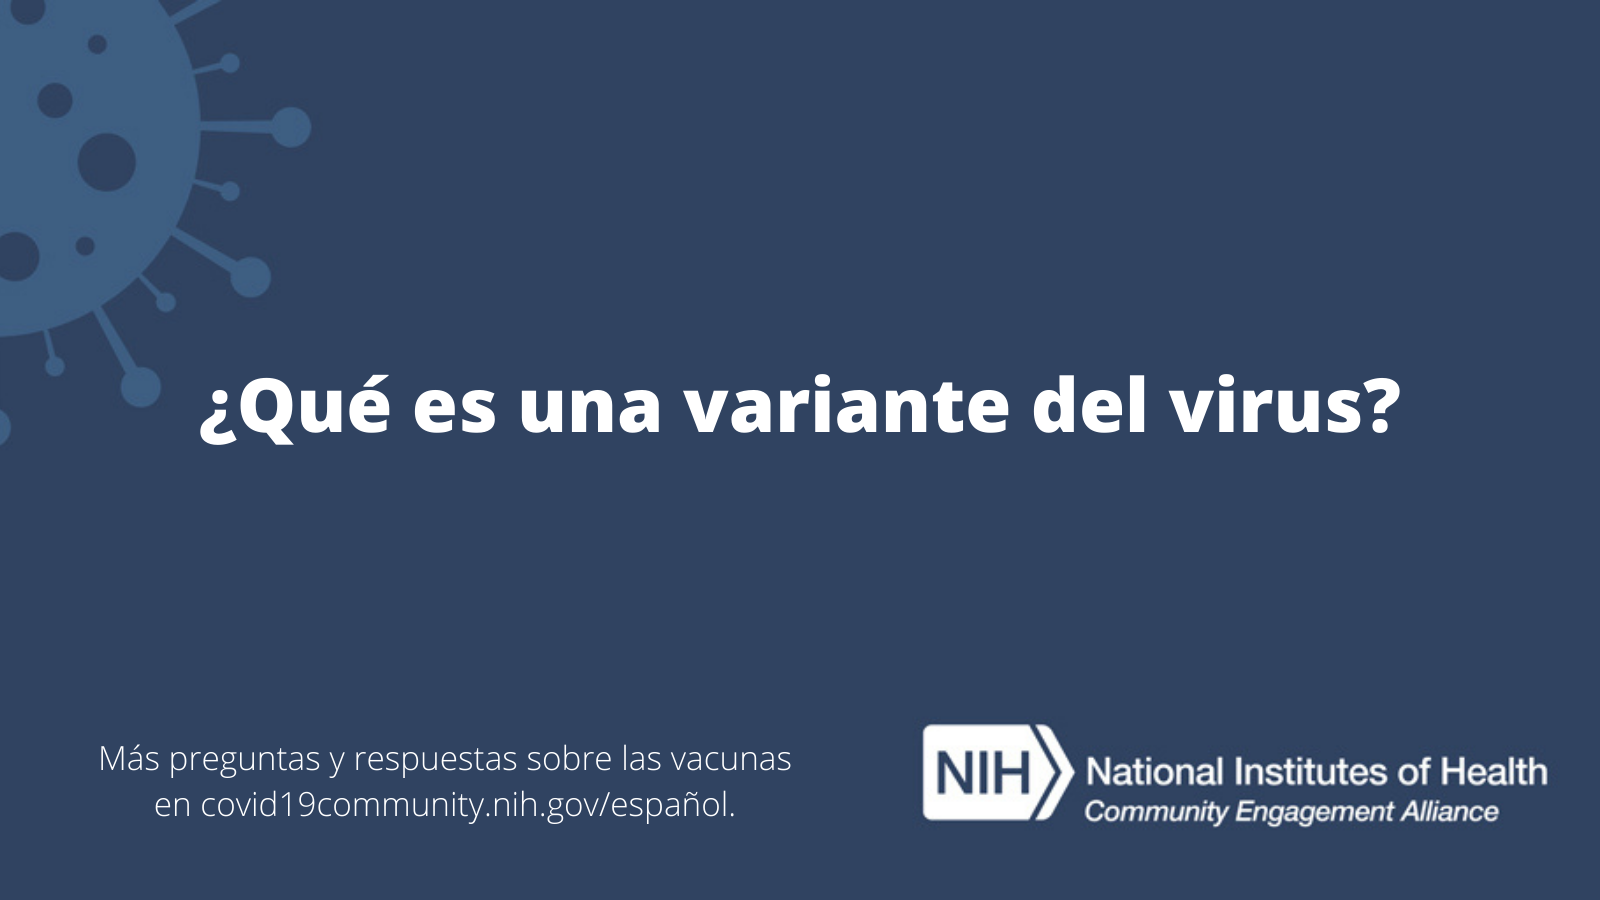 ¿Qué es una variante del virus? Más preguntas y respuestas sobre las vacunas en covid19community.nih.gov/español.